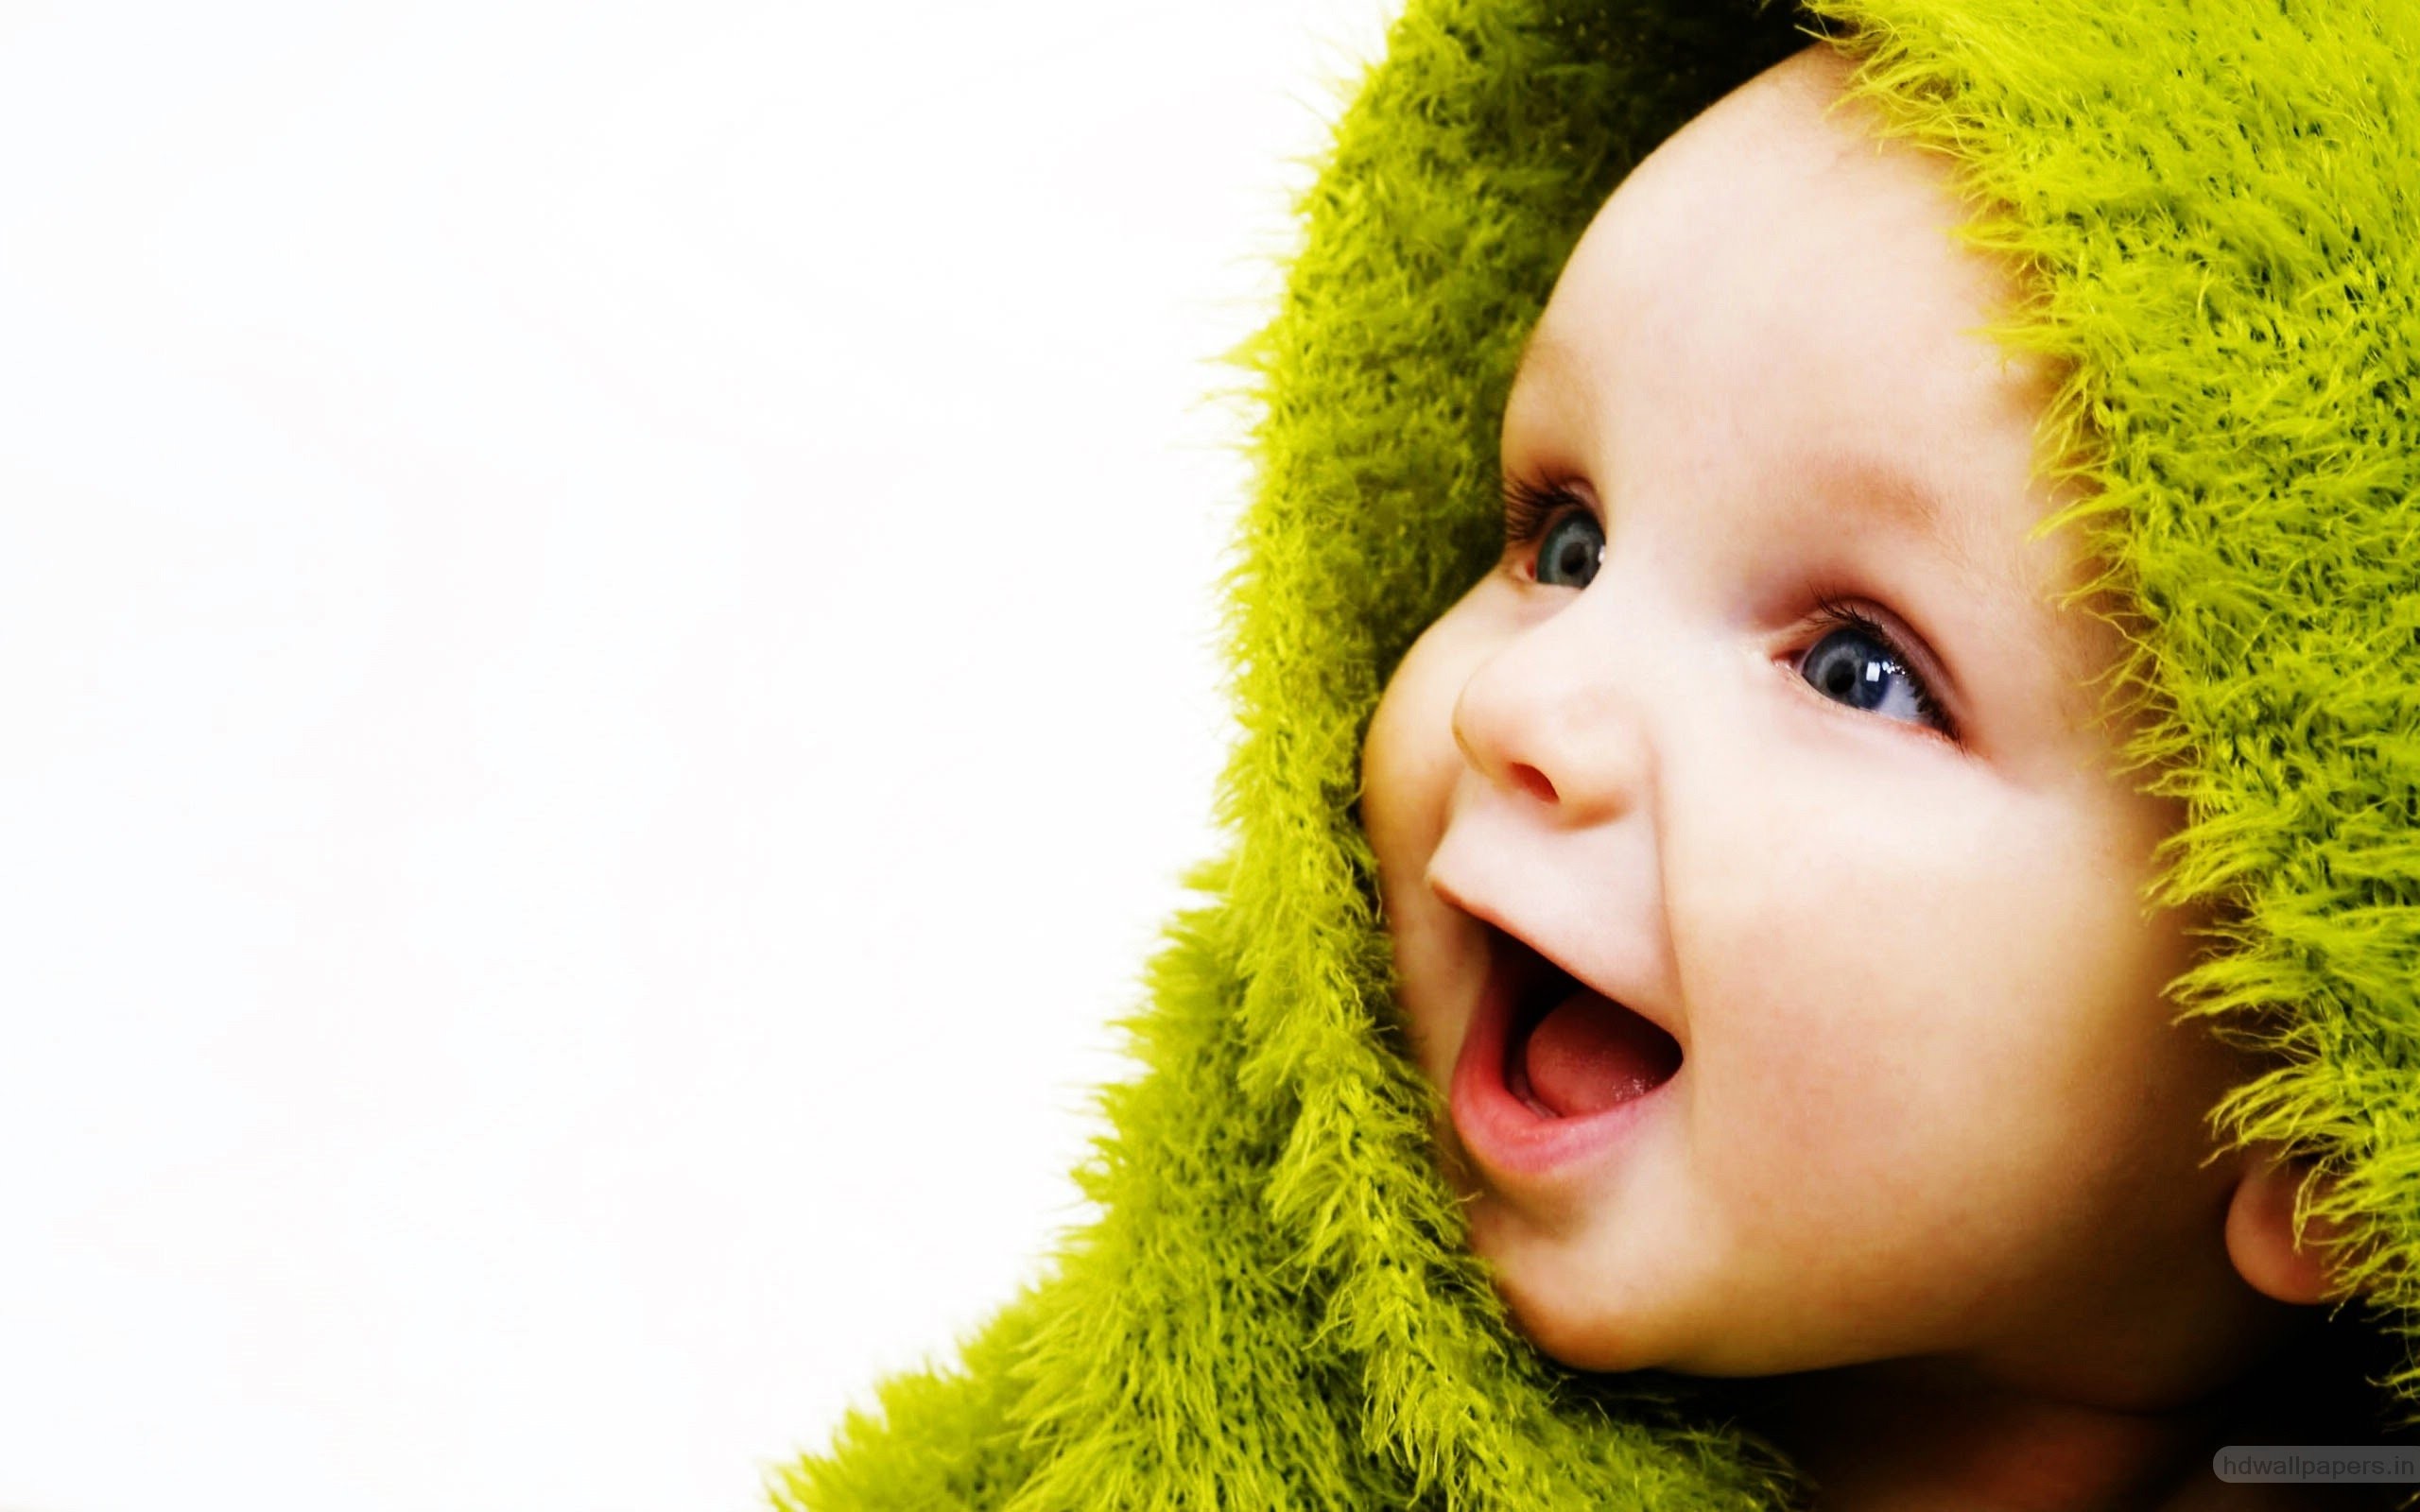 Baby Wallpaper Images - Free Download on Freepik